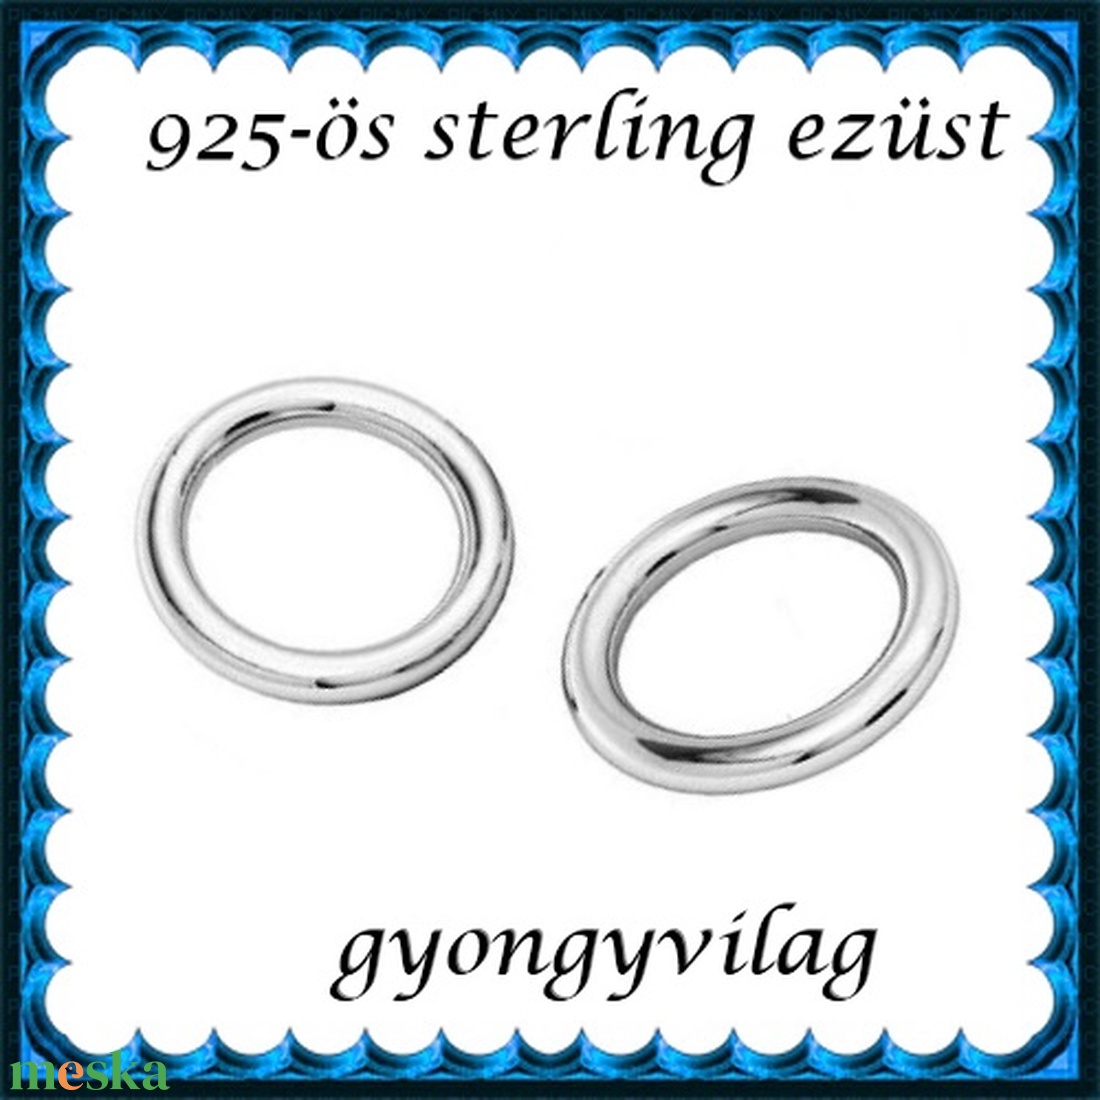 925-ös sterling ezüst ékszerkellék: karika zárt ESZK Z 7x0,8 mm 2db/csomag - gyöngy, ékszerkellék - egyéb alkatrész - Meska.hu